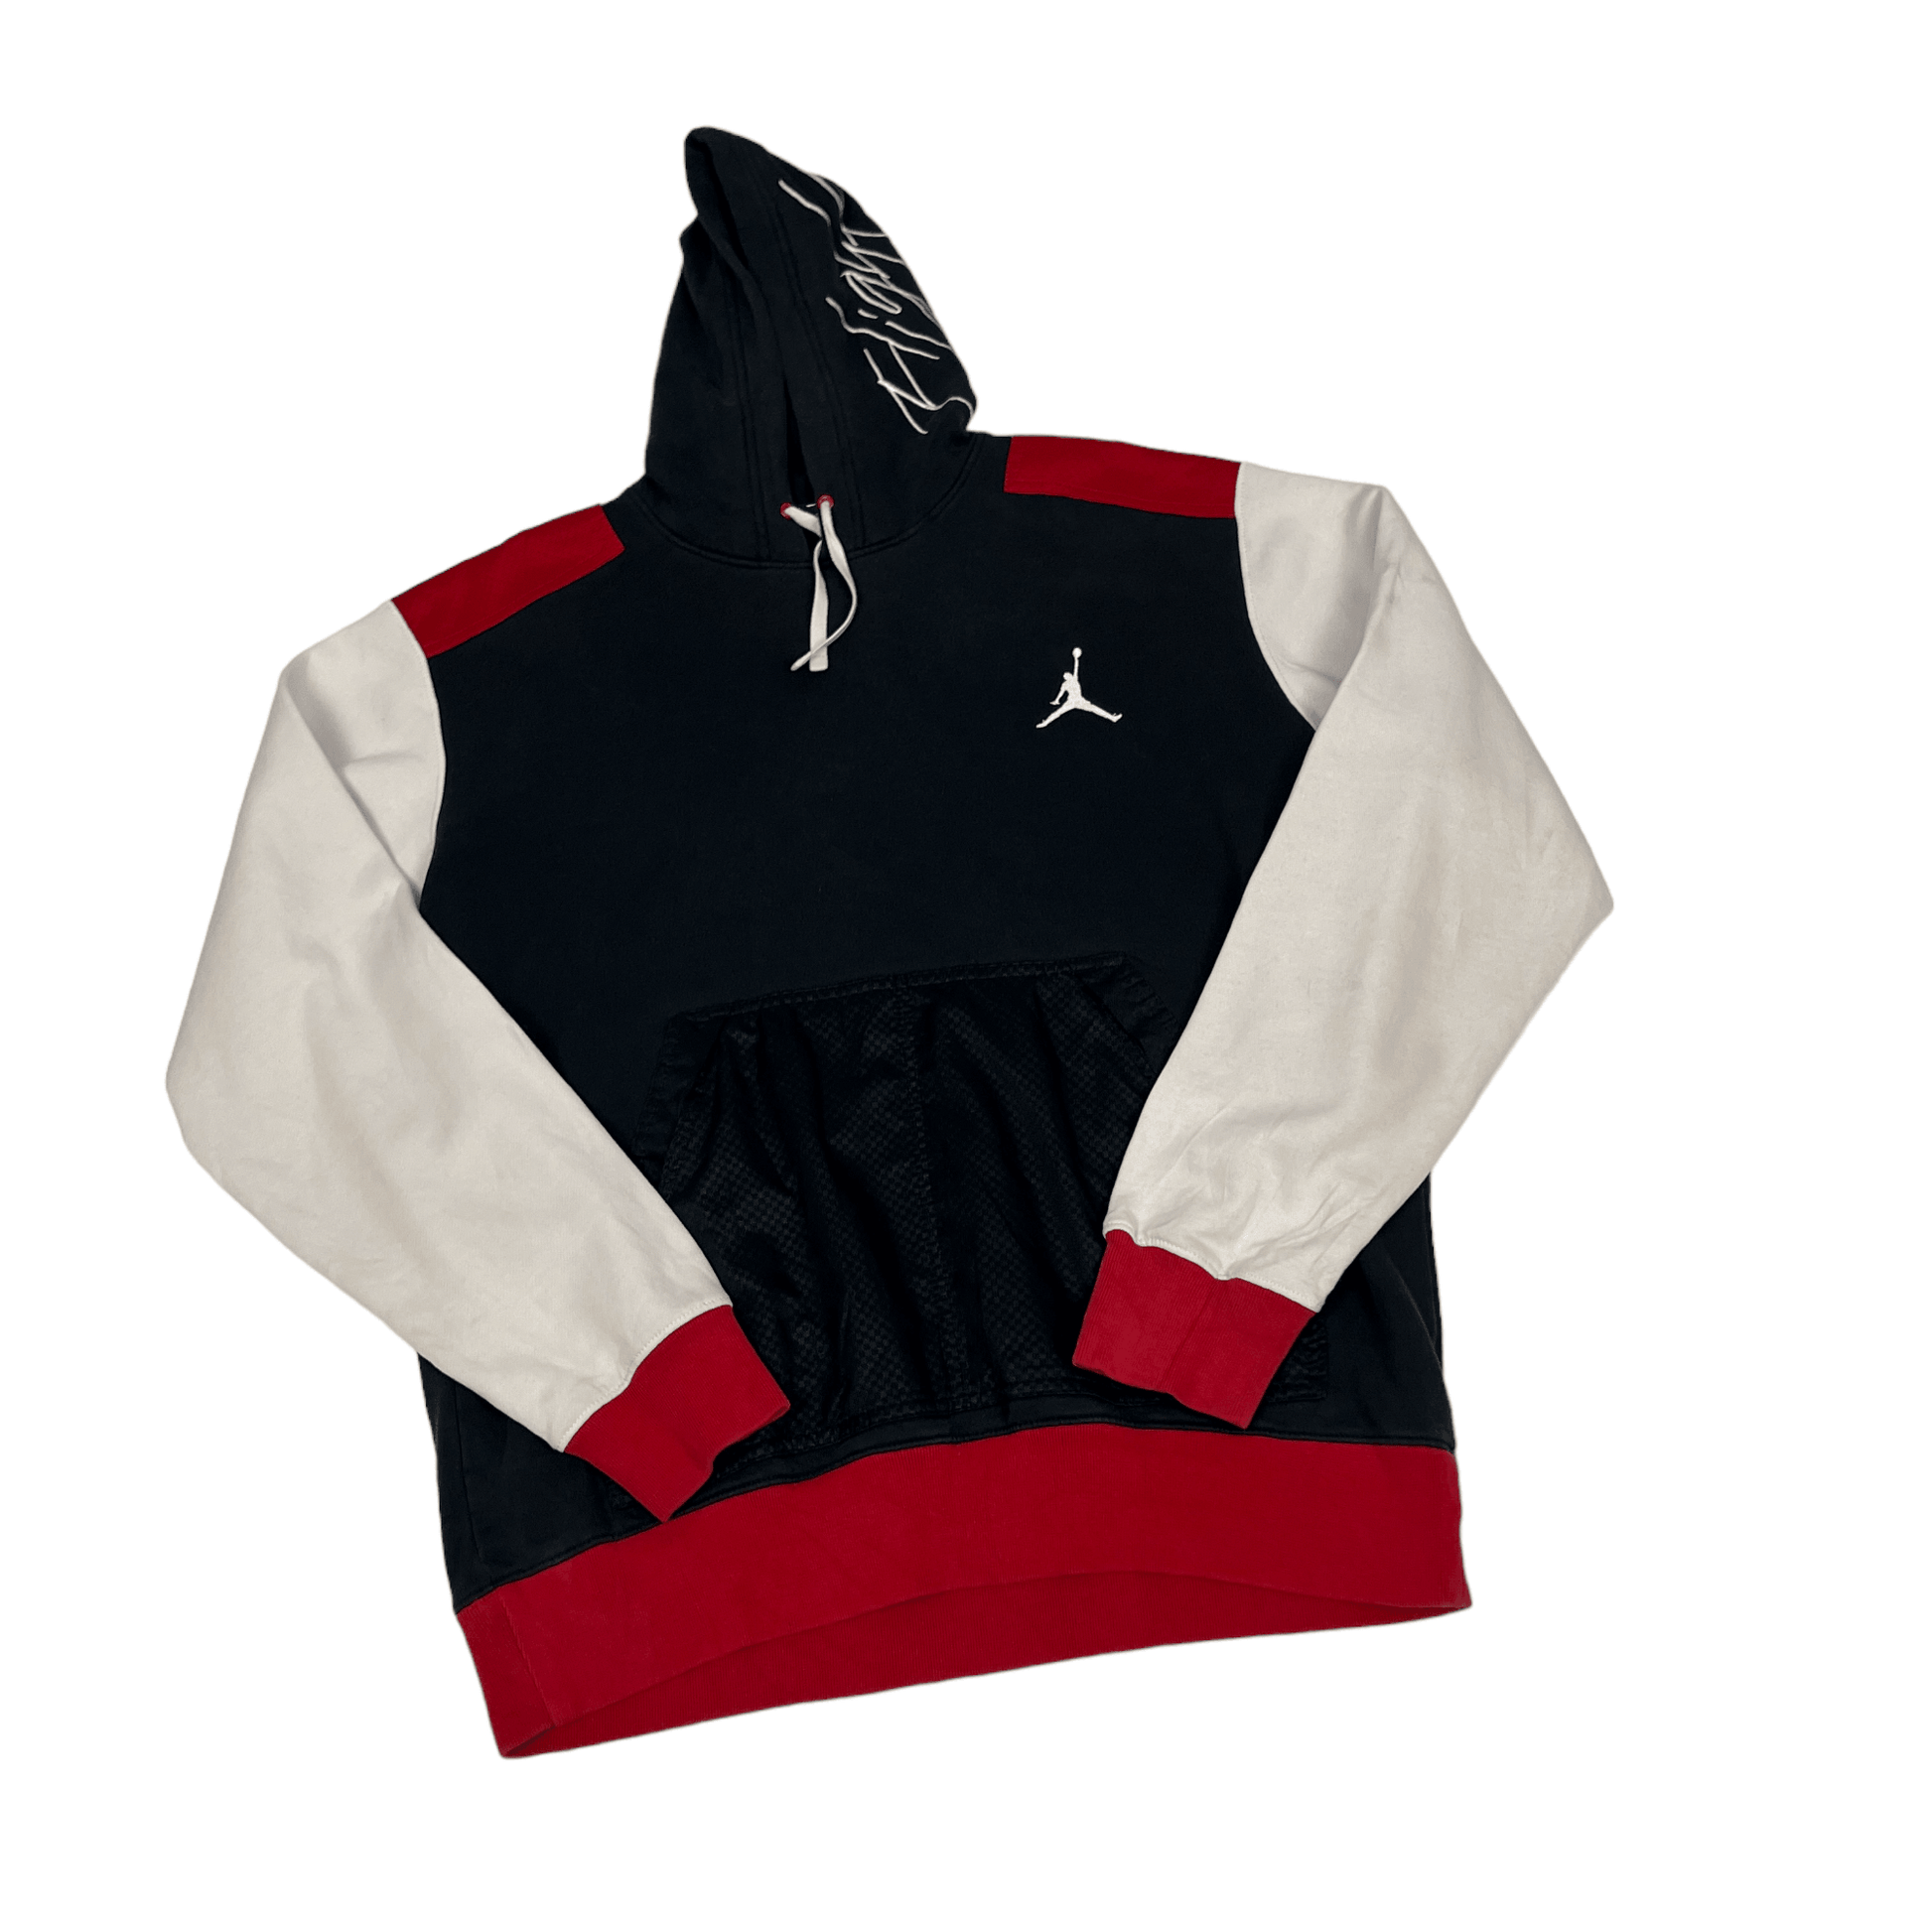 Vintage Black, White + Red Air Jordan Hoodie - Large - The Streetwear Studio